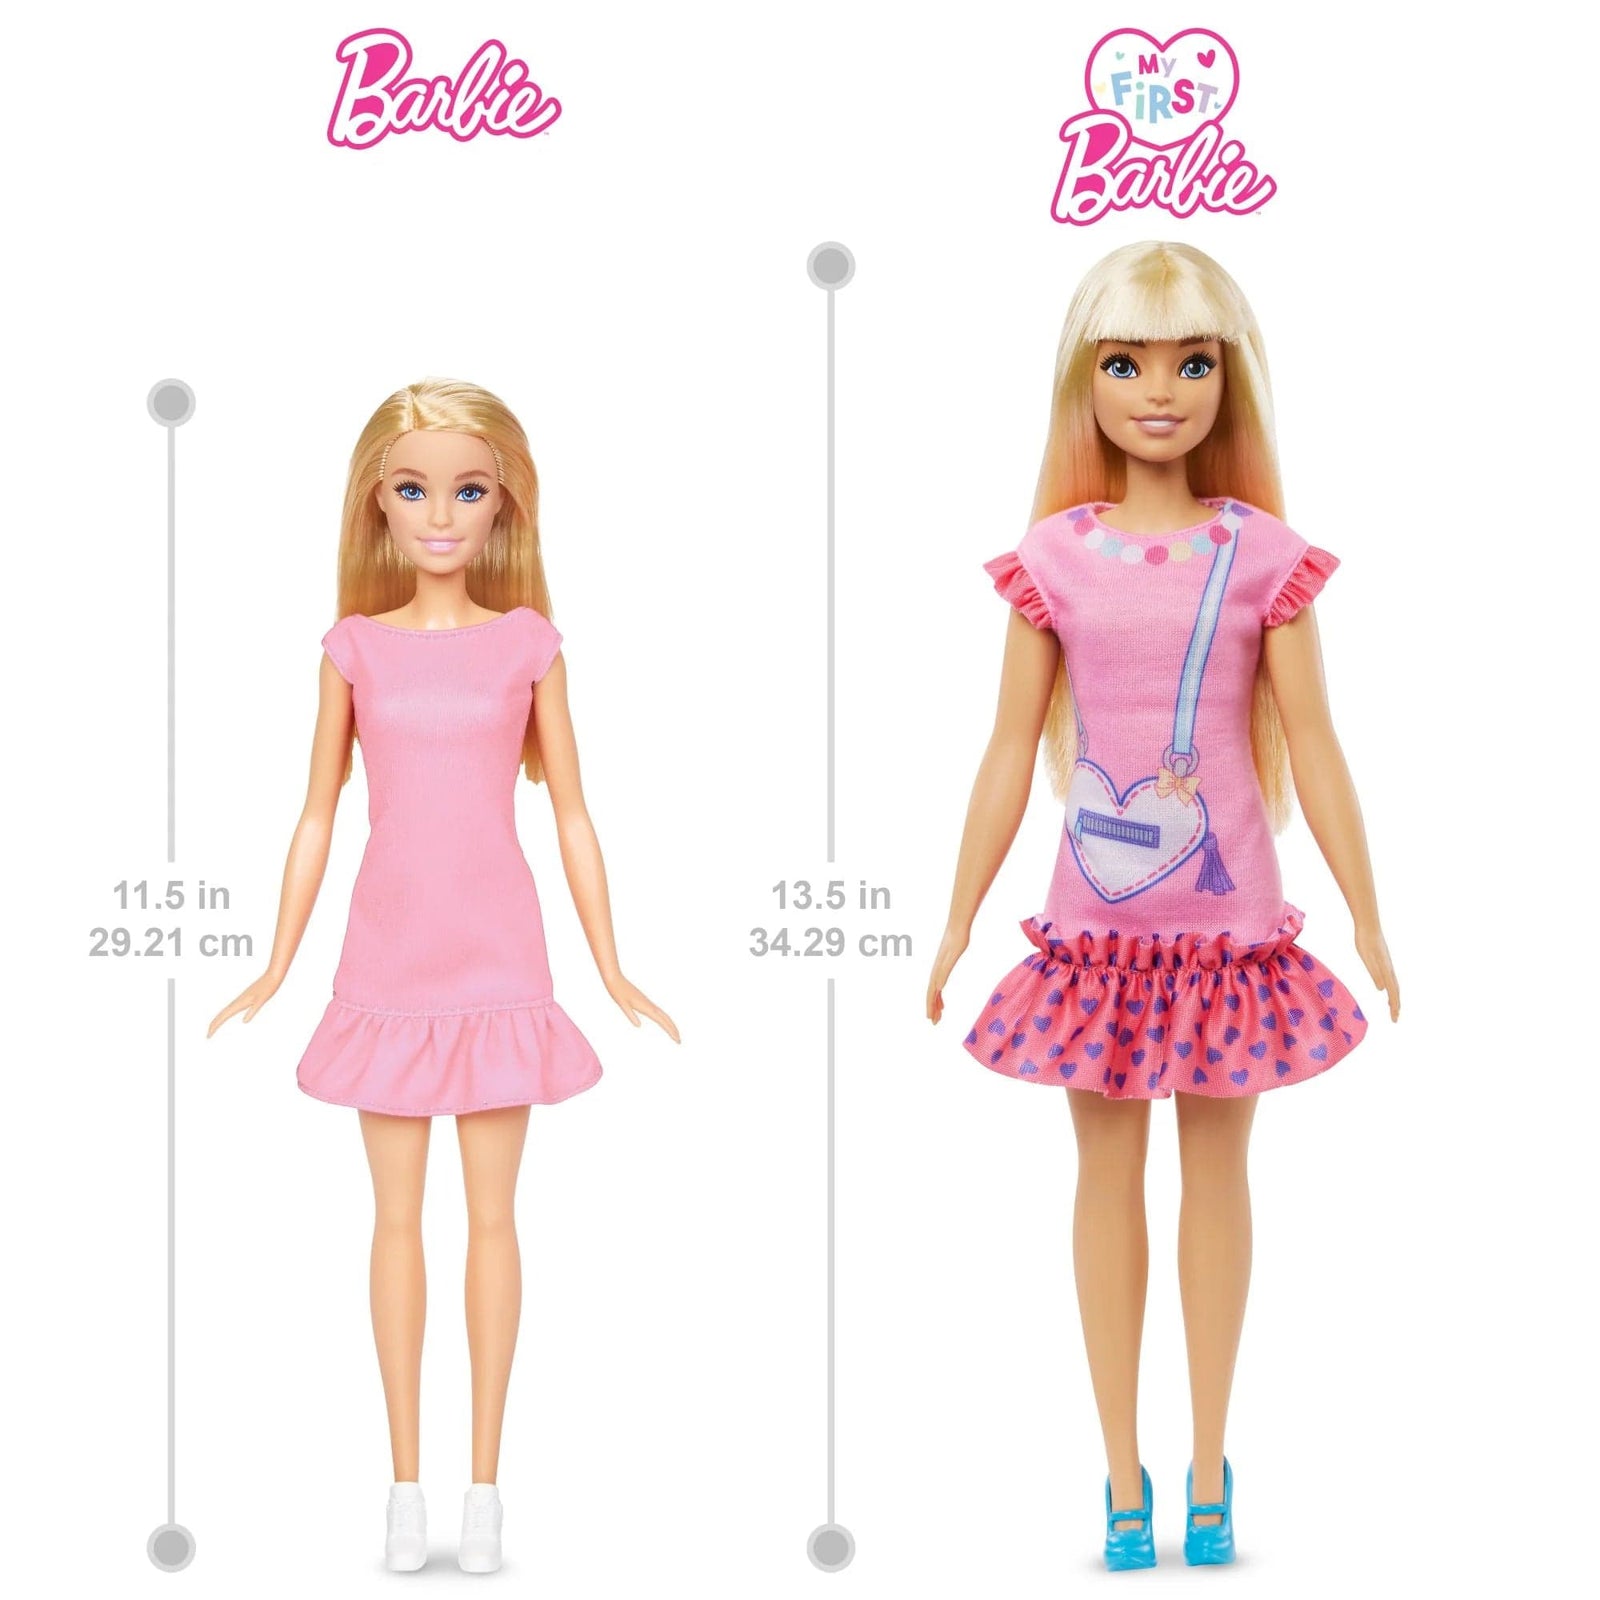 Barbie My First Barbie “Malibu” Doll